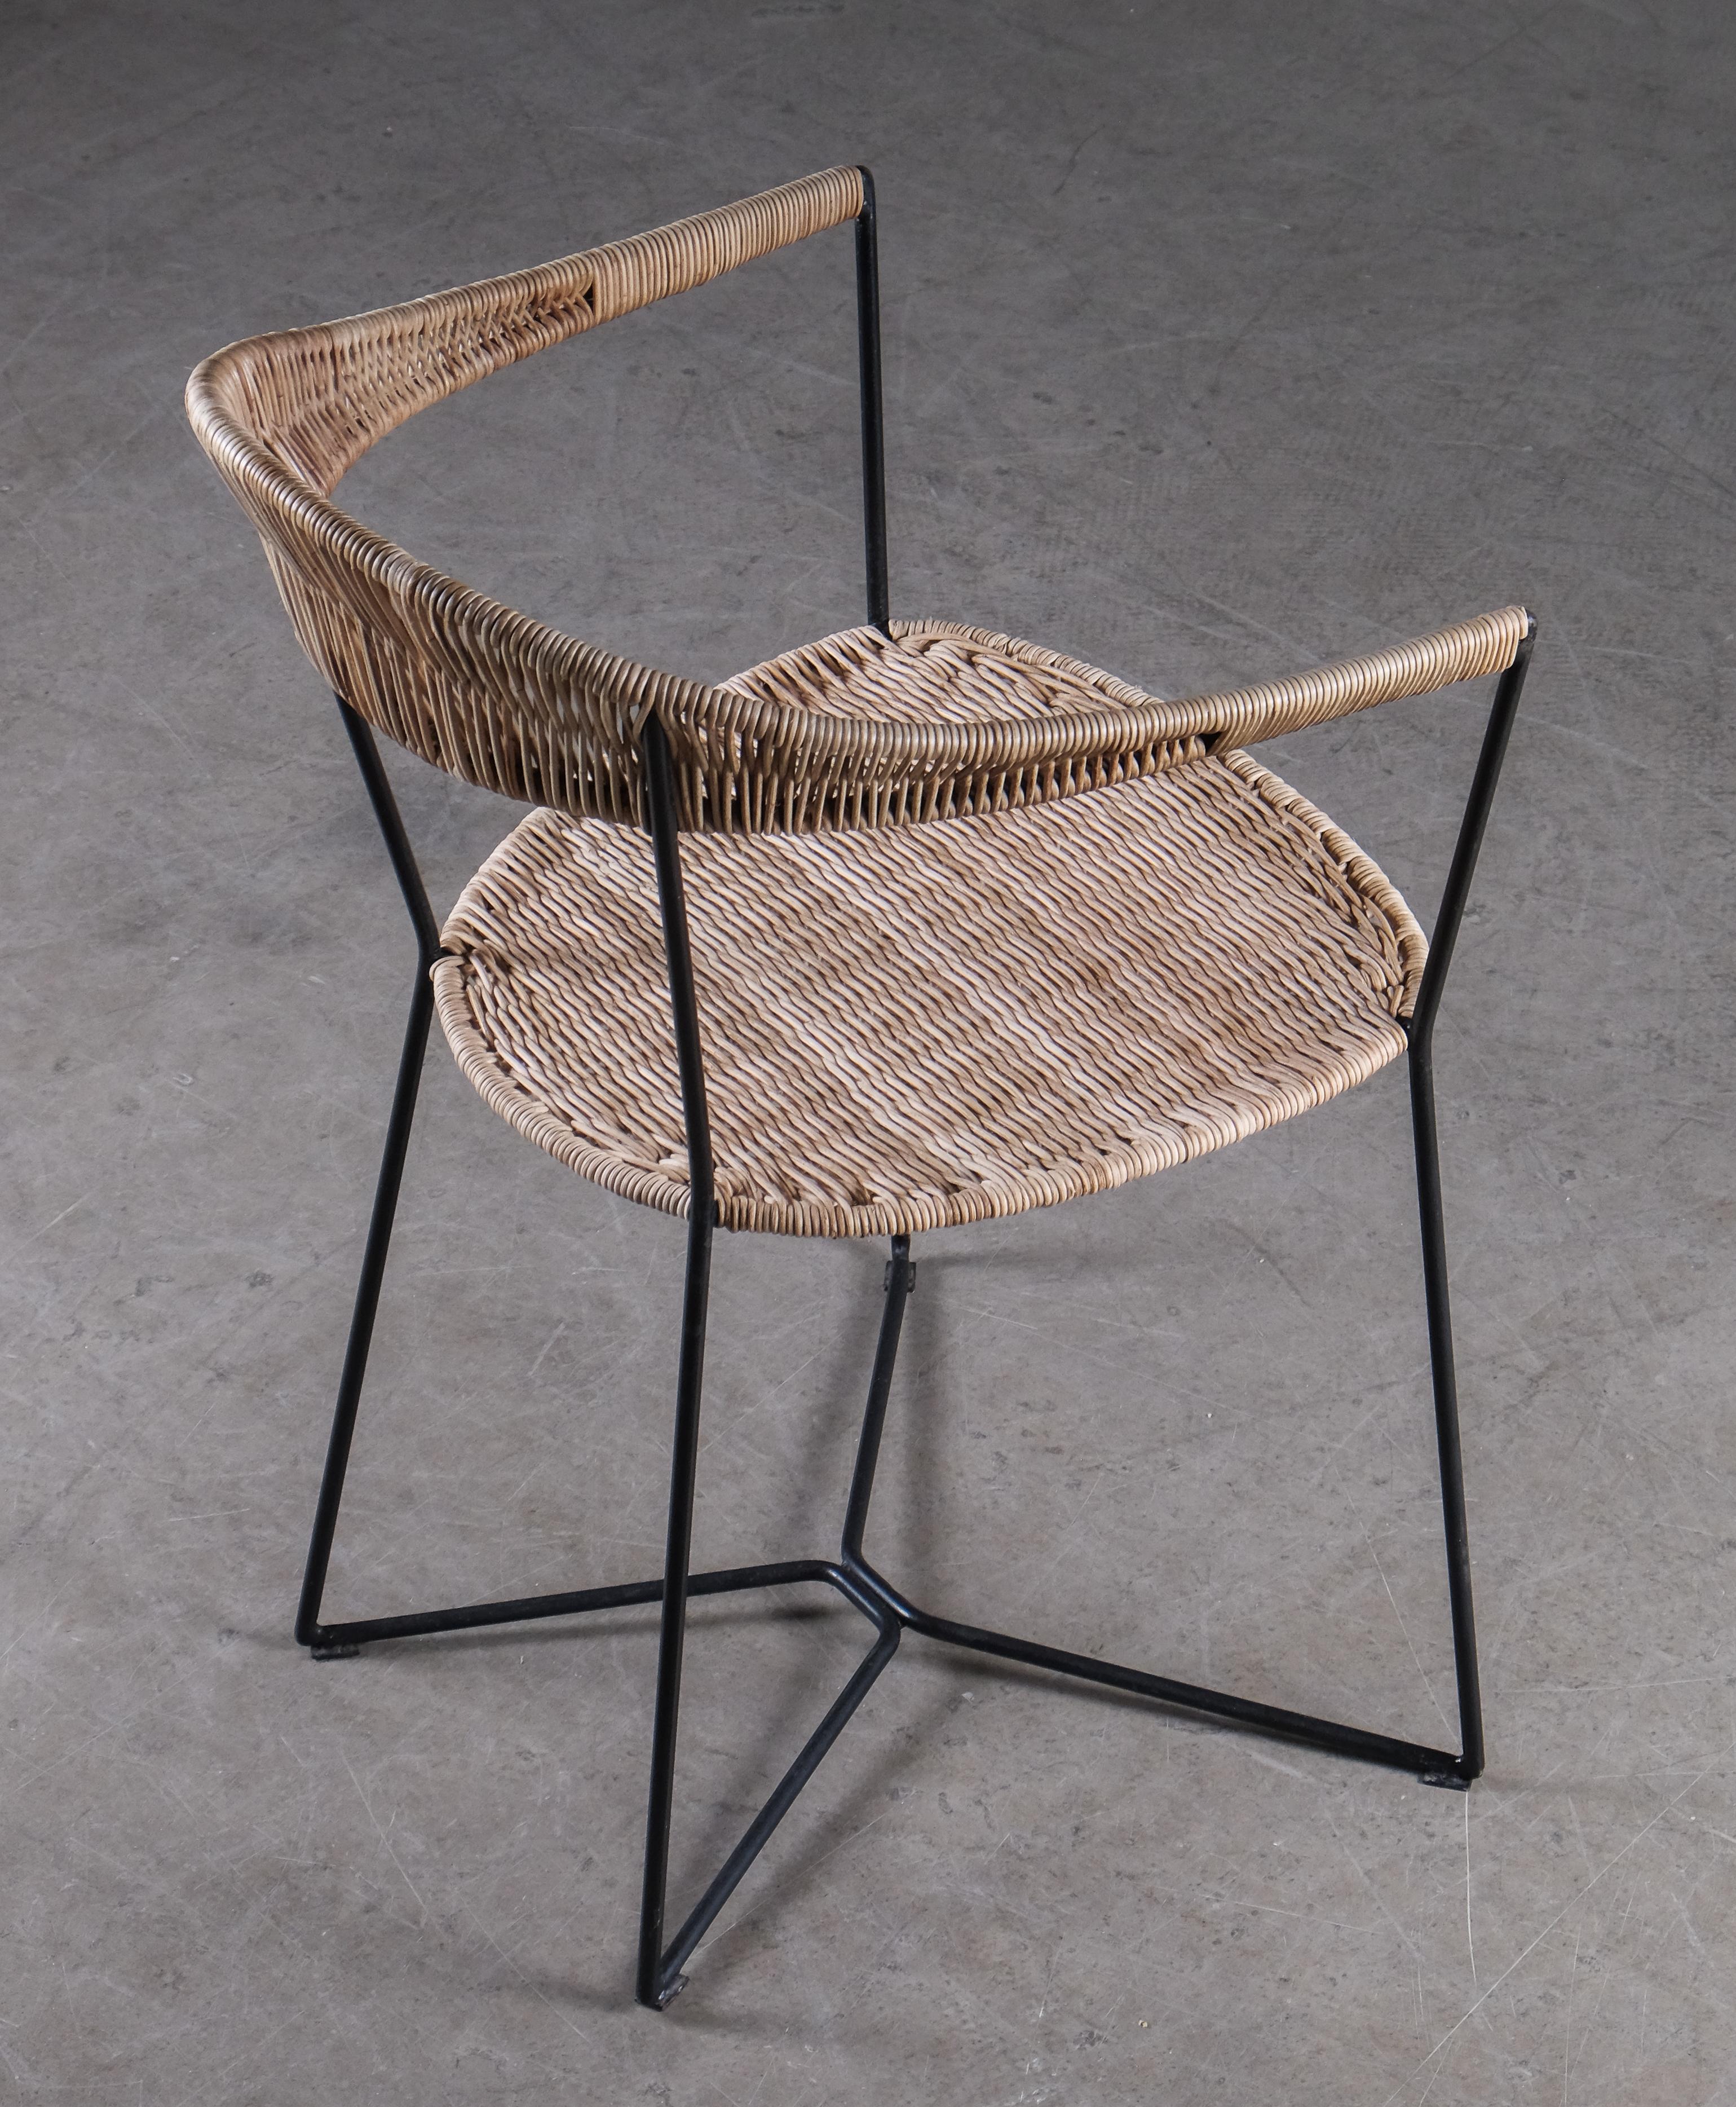 Rare fauteuil conçu par Ivar Callmander, années 1920. Structure en métal laqué et rotin.
Très bon état.